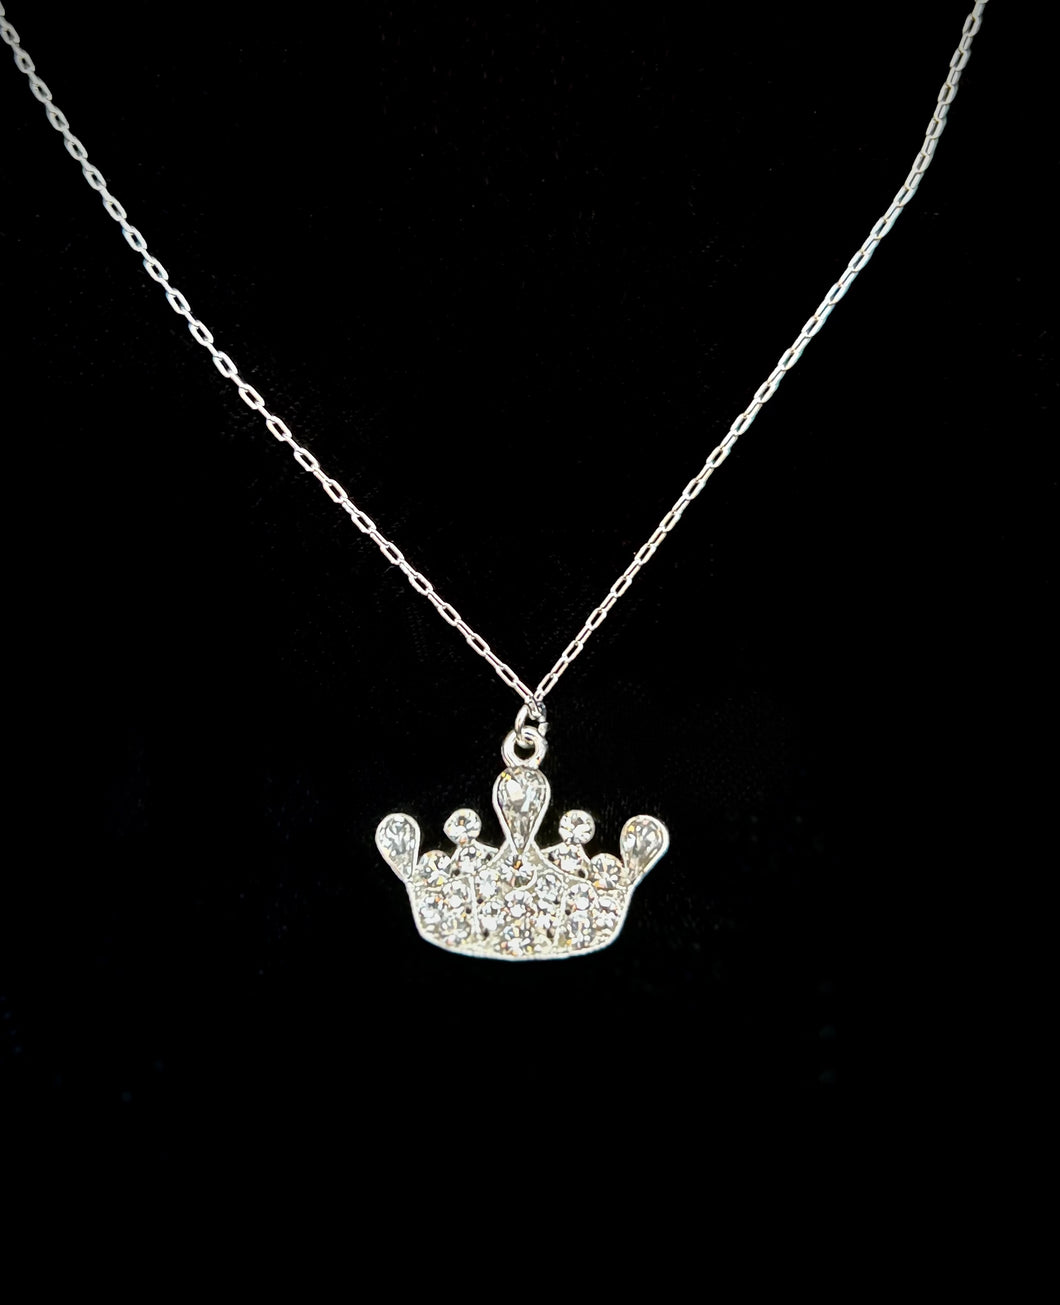 Necklace Miss Volunteer America Crown Pendant